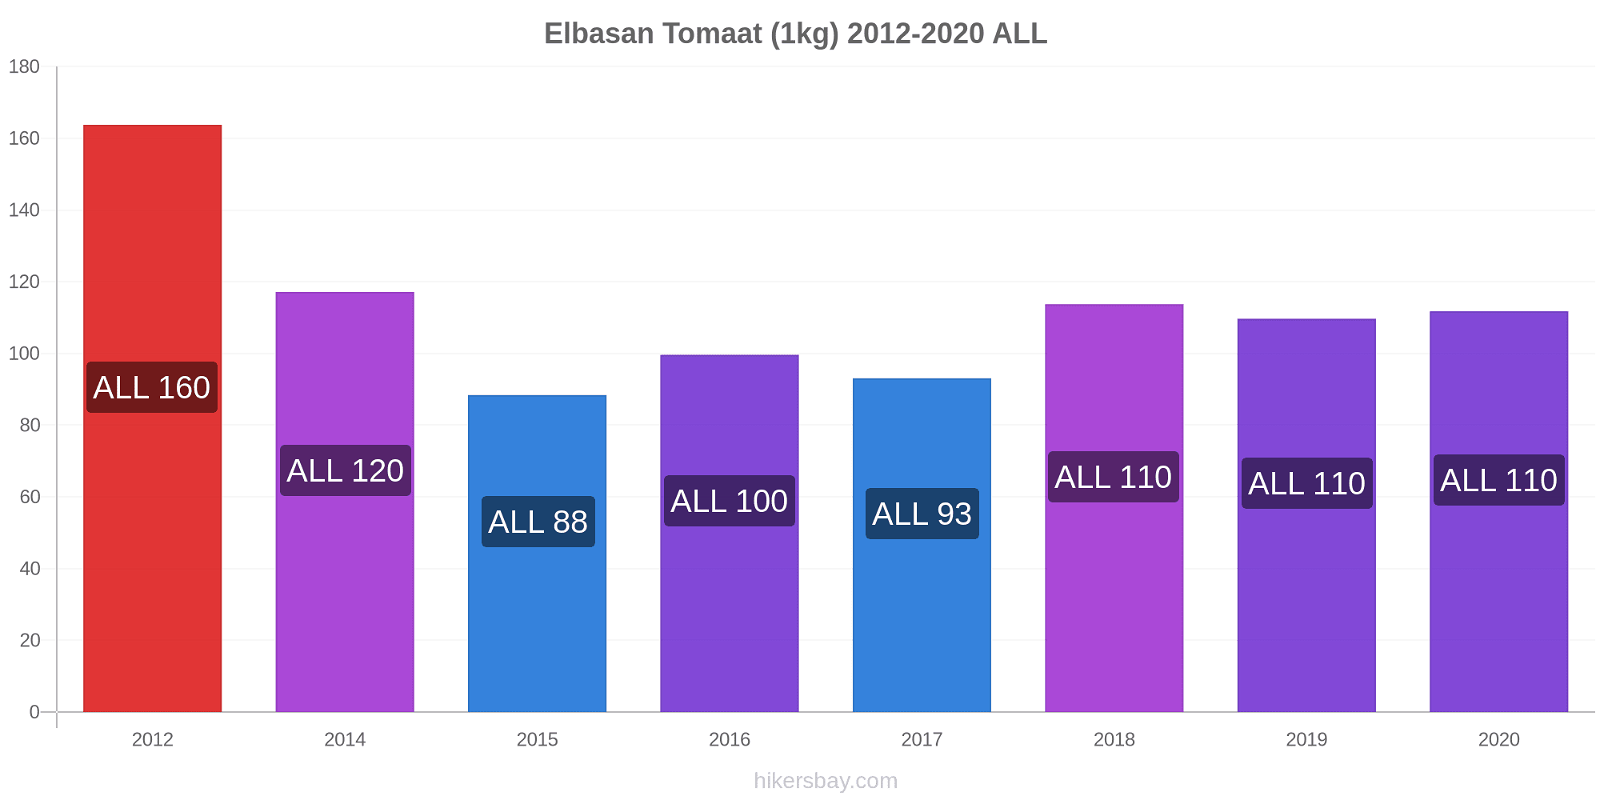 Elbasan prijswijzigingen Tomaat (1kg) hikersbay.com